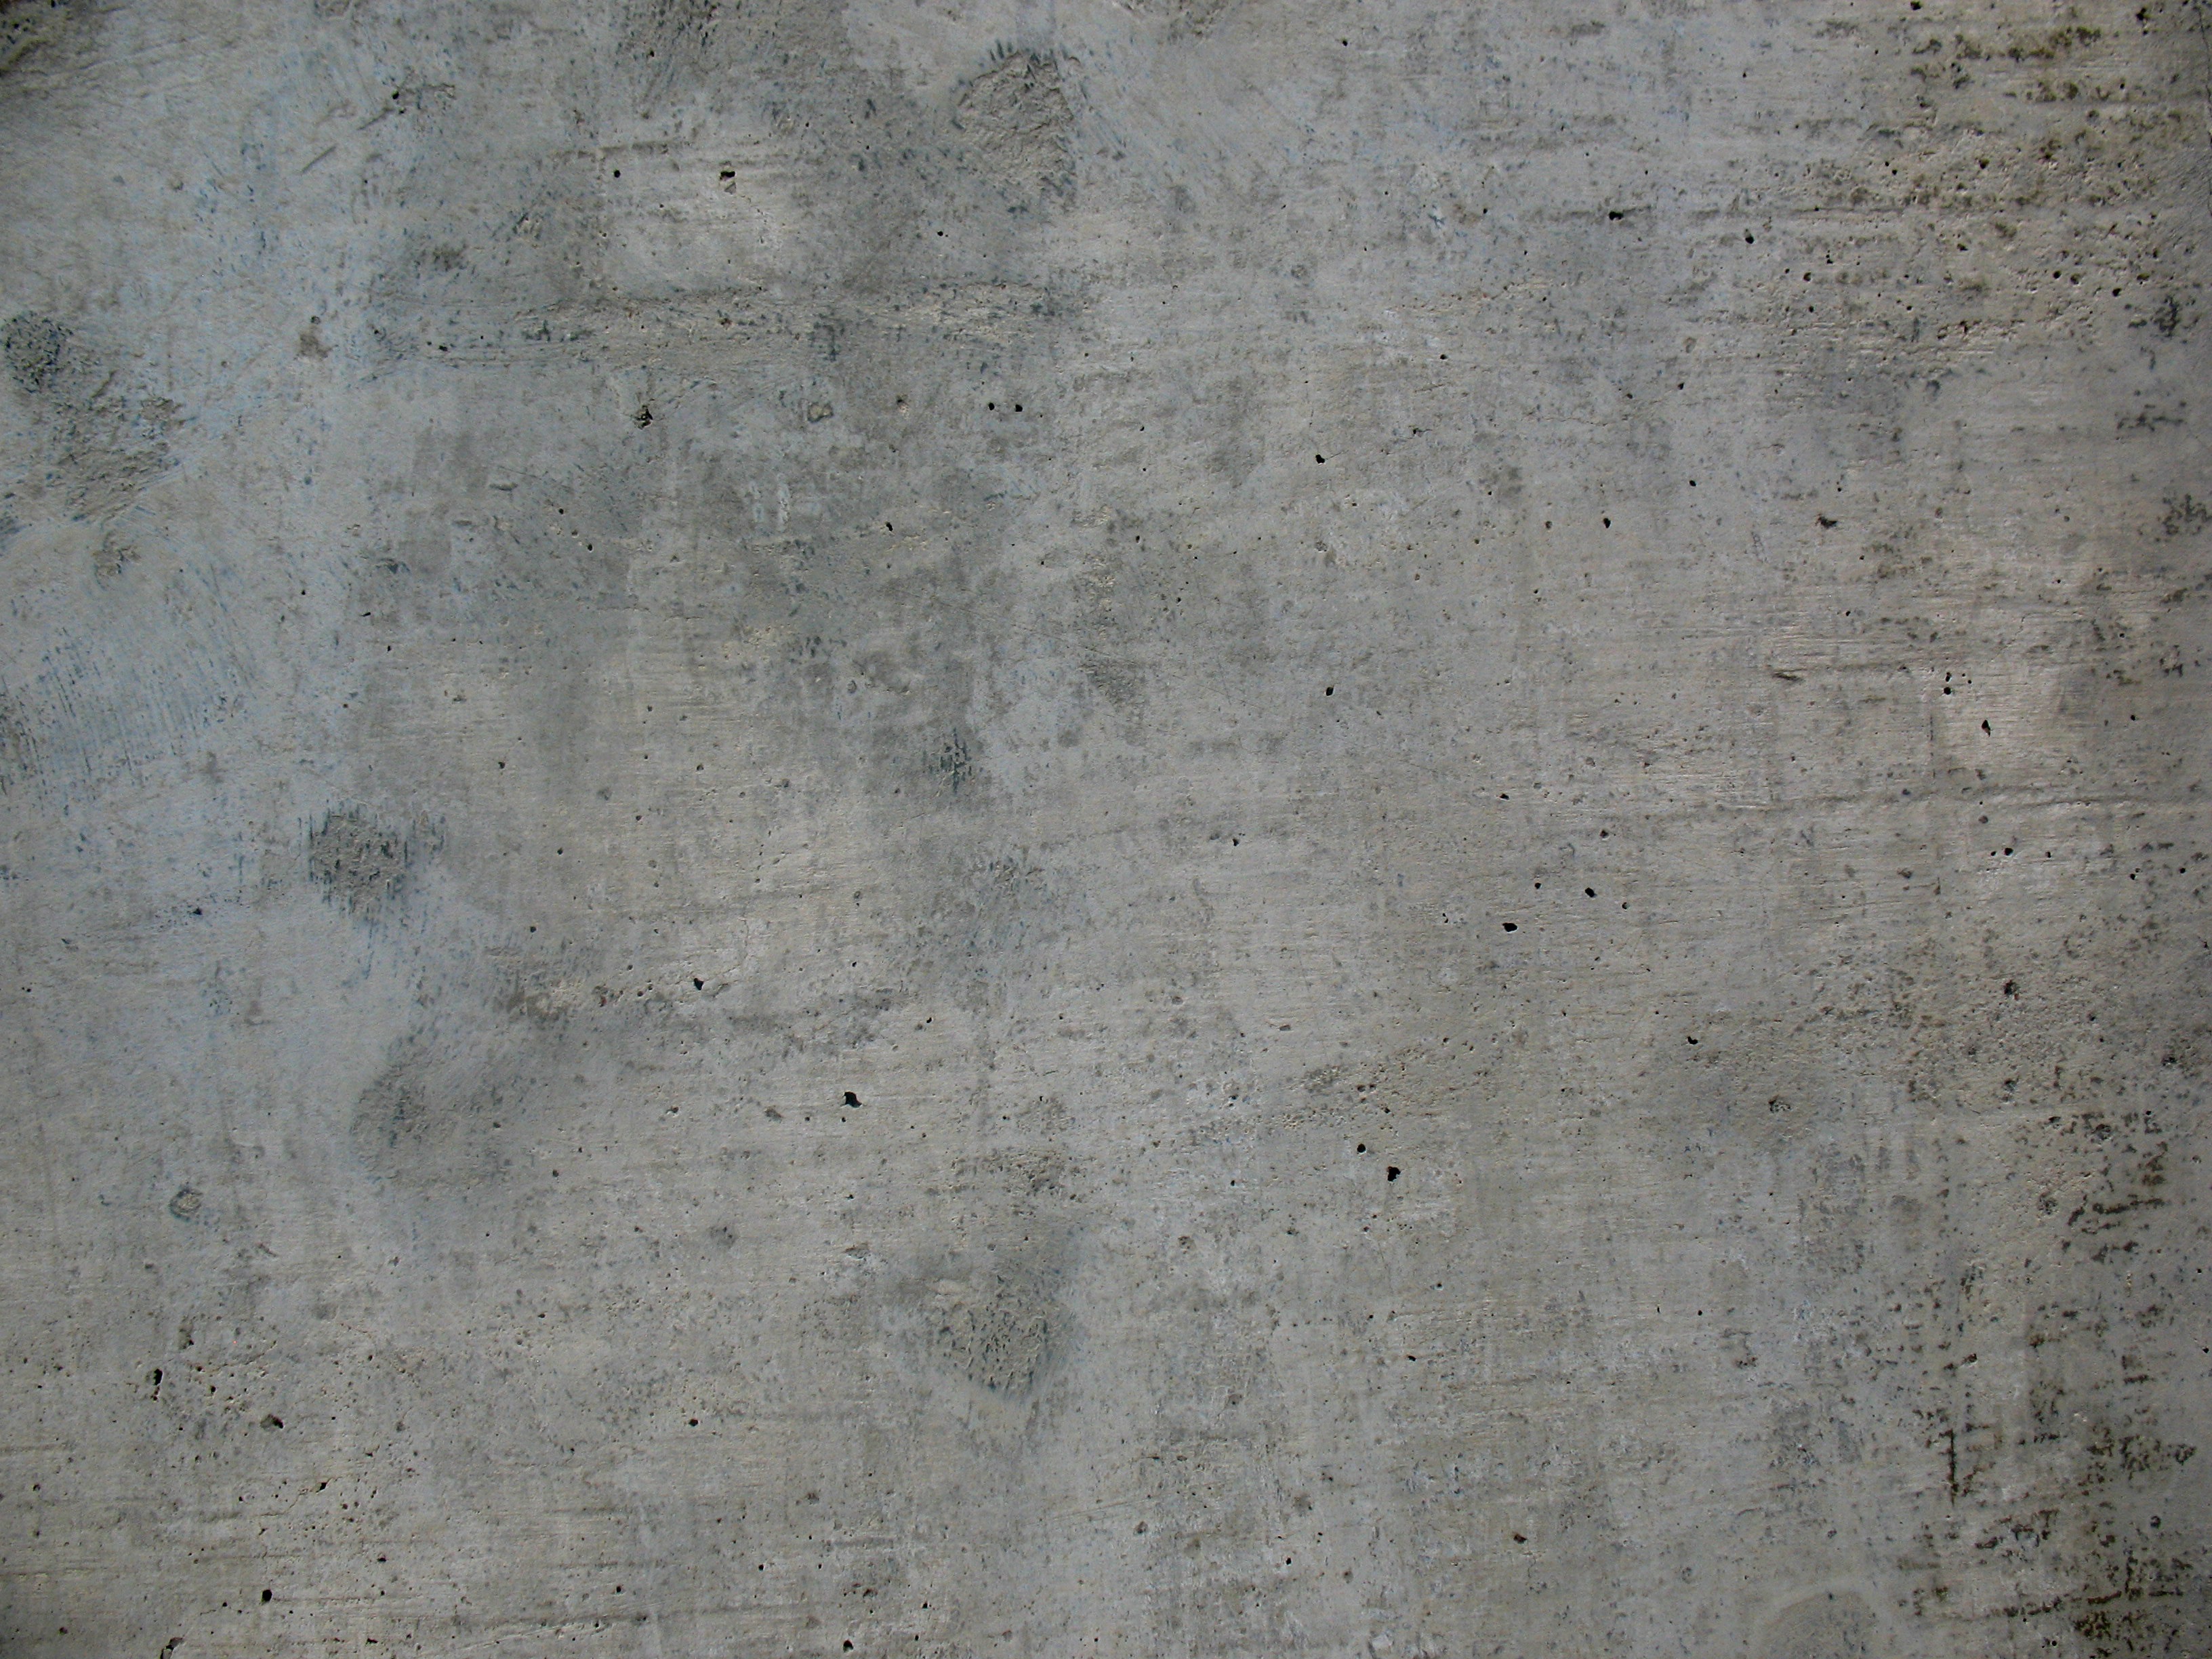 Concrete texture